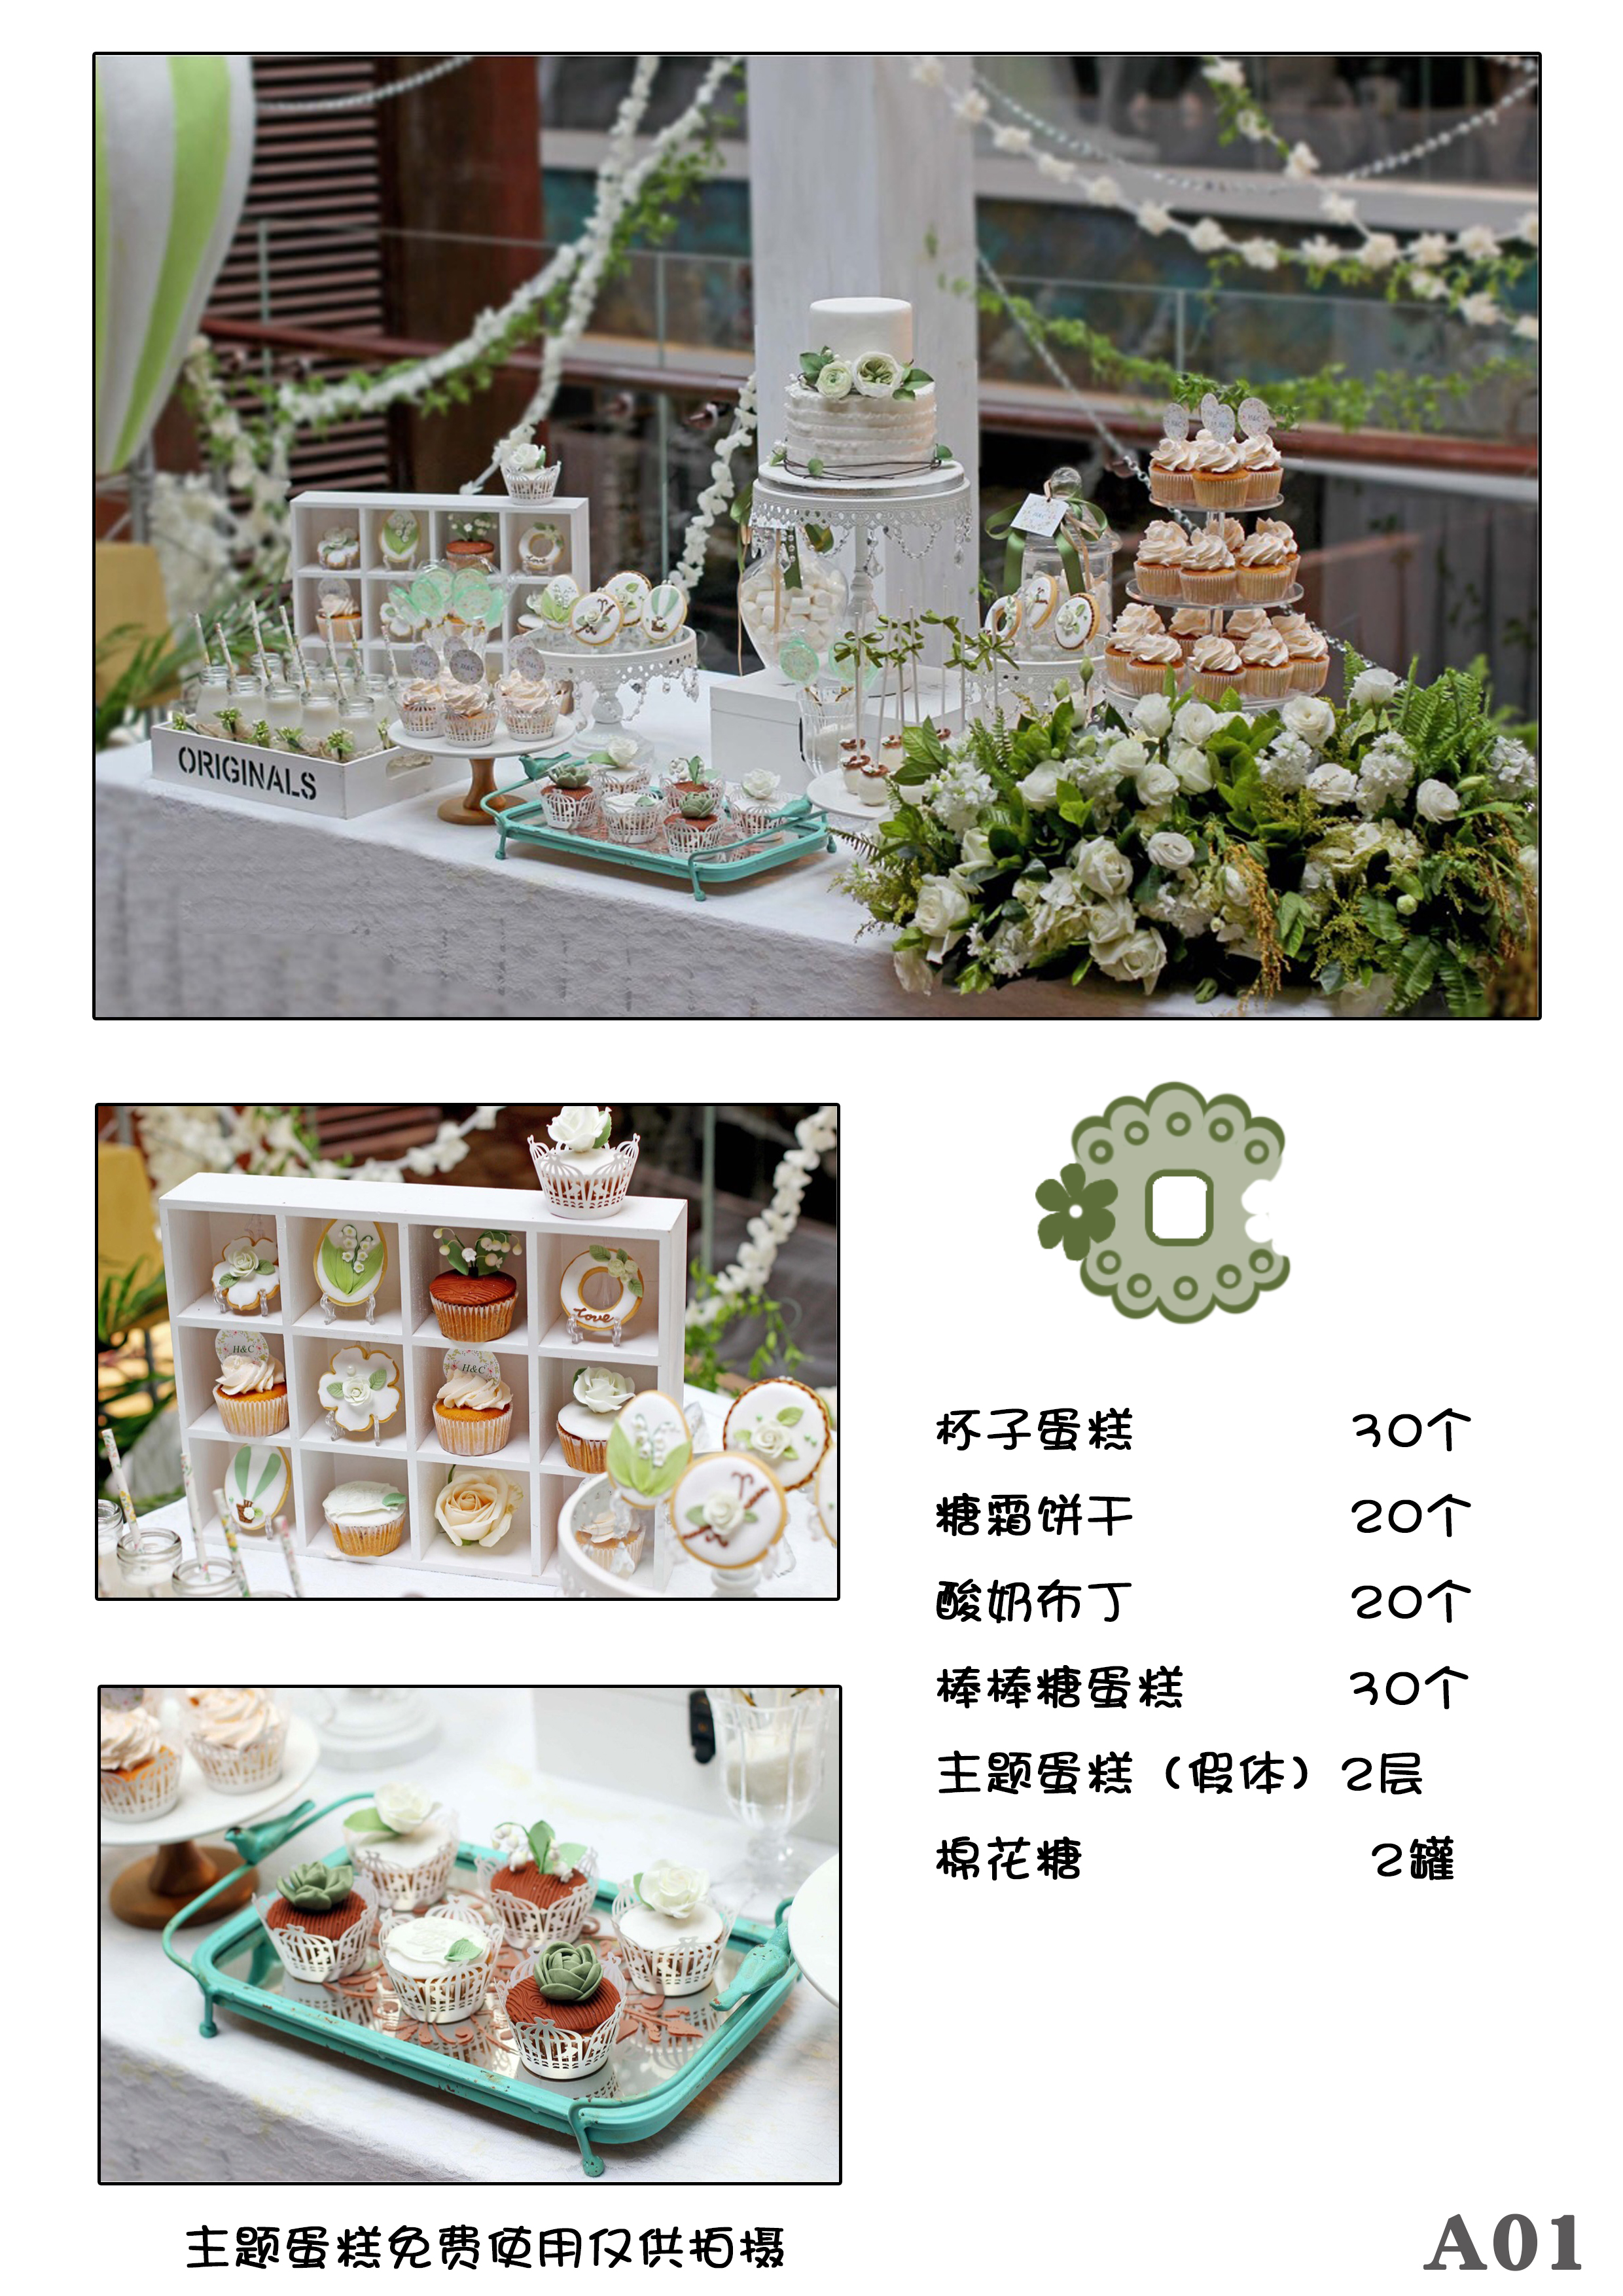 沈阳婚礼甜品台 更多图片请加微信:13998367675 或搜索淘宝店铺:小樱